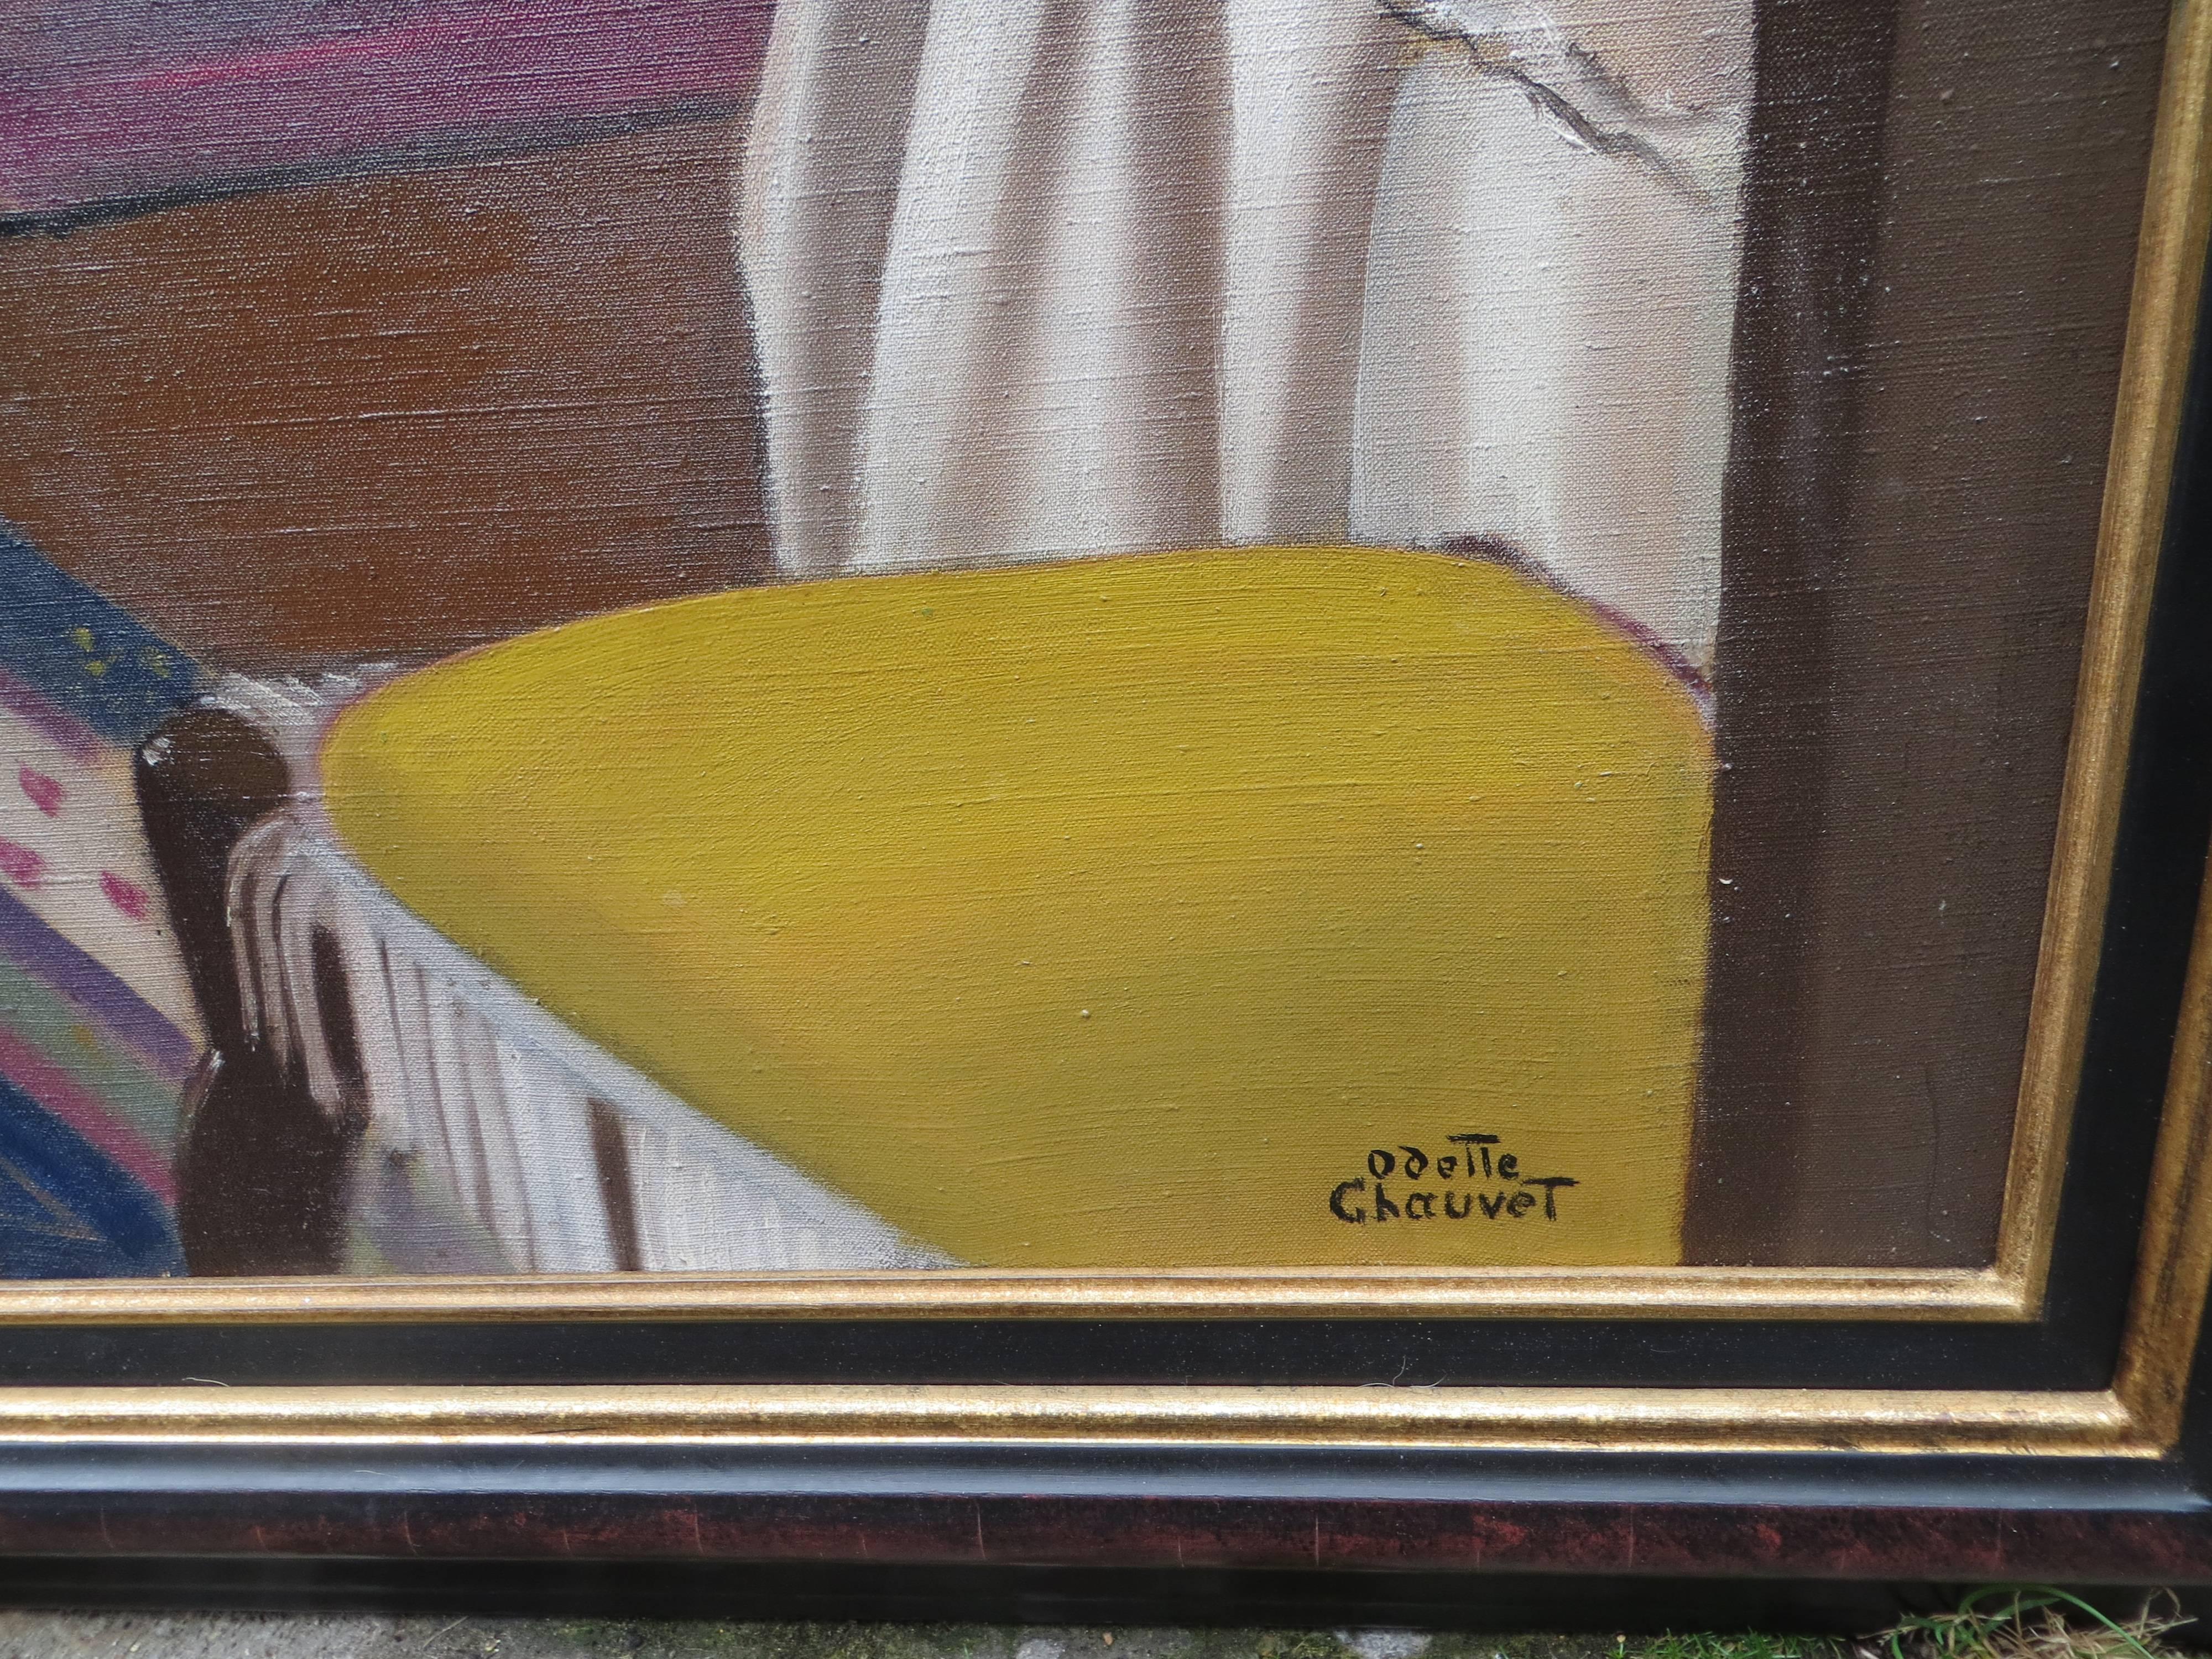 CHAUVET Odette
Geboren in Nantes (Loire Atlantique) 20. Französisch.
Maler von Porträts, Interieurs und Stillleben.
Seit 1919 stellte sie in Paris auf dem Salon d'Automne aus, außerdem stellte sie auf dem Salon des Independants aus.

Ref: BENEZIT
